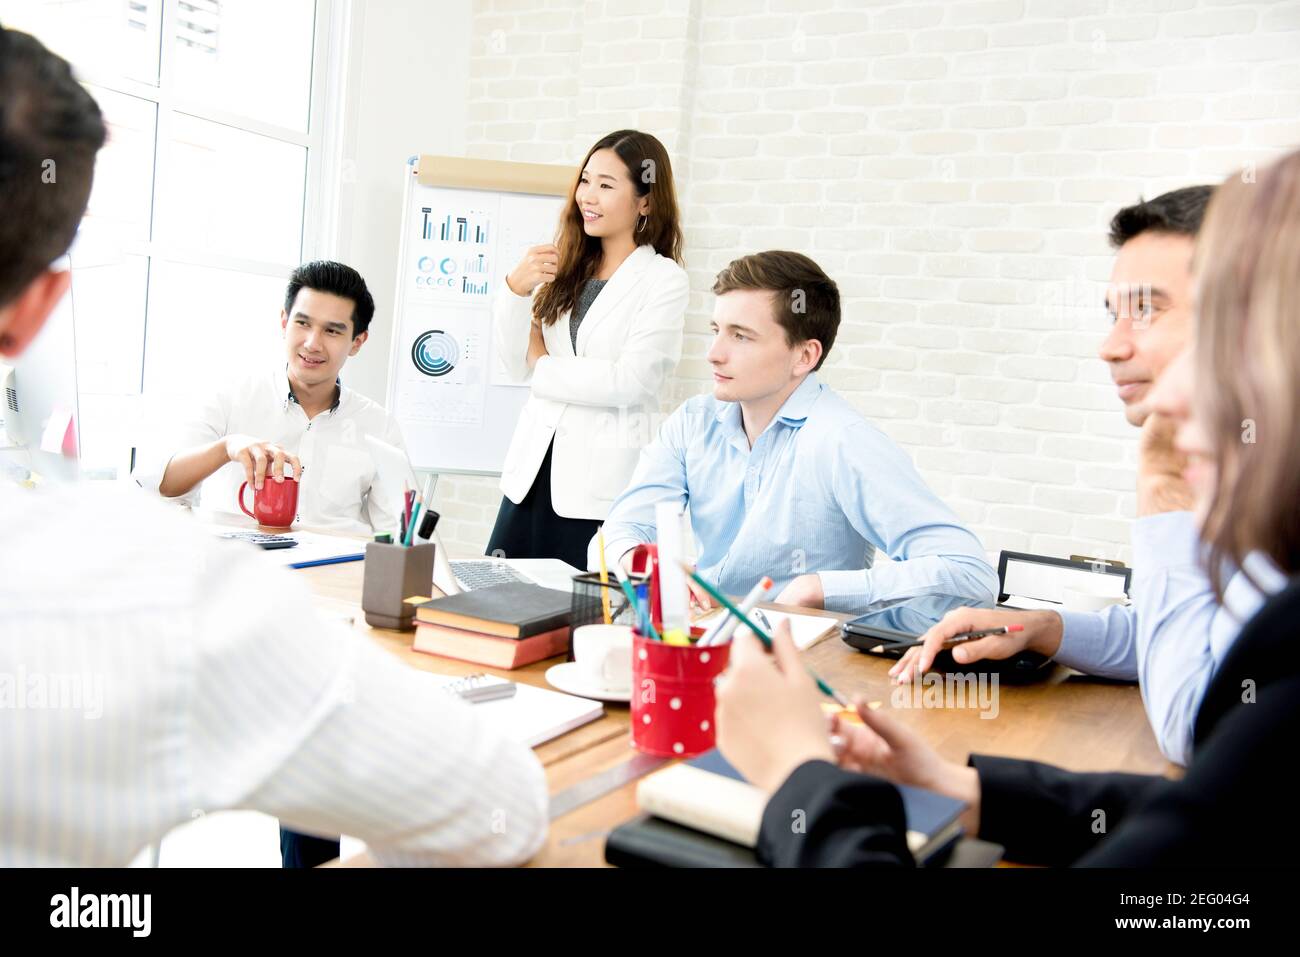 Junge interracial Geschäftsleute hören ihren Kollegen in der Meeting - Teamarbeit und Brainstorming-Konzepte Stockfoto